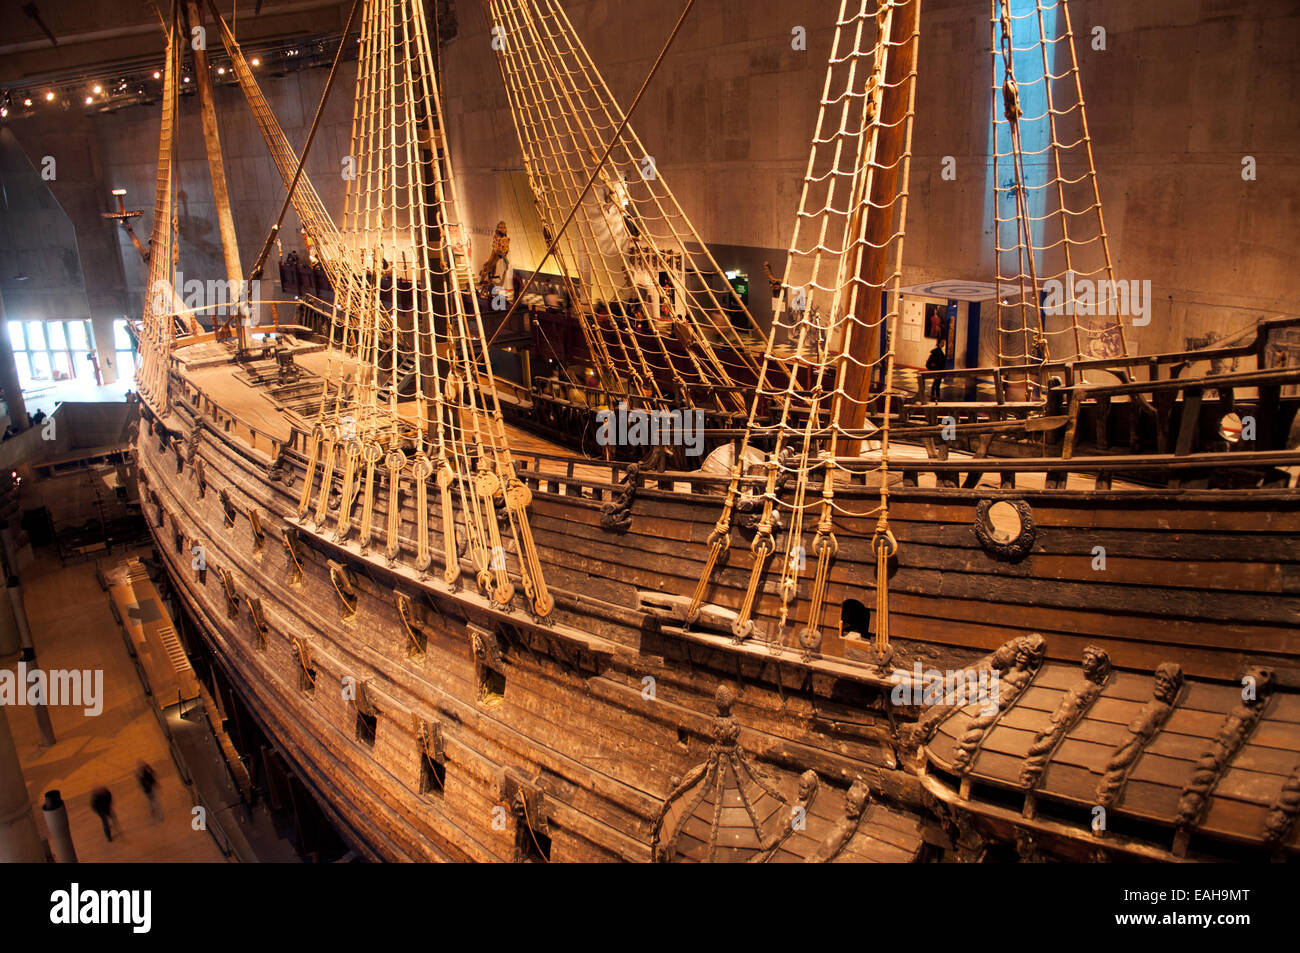 Phares parfaitement préservé, Musée Vasa Vasa, Stockholm, Suède Banque D'Images